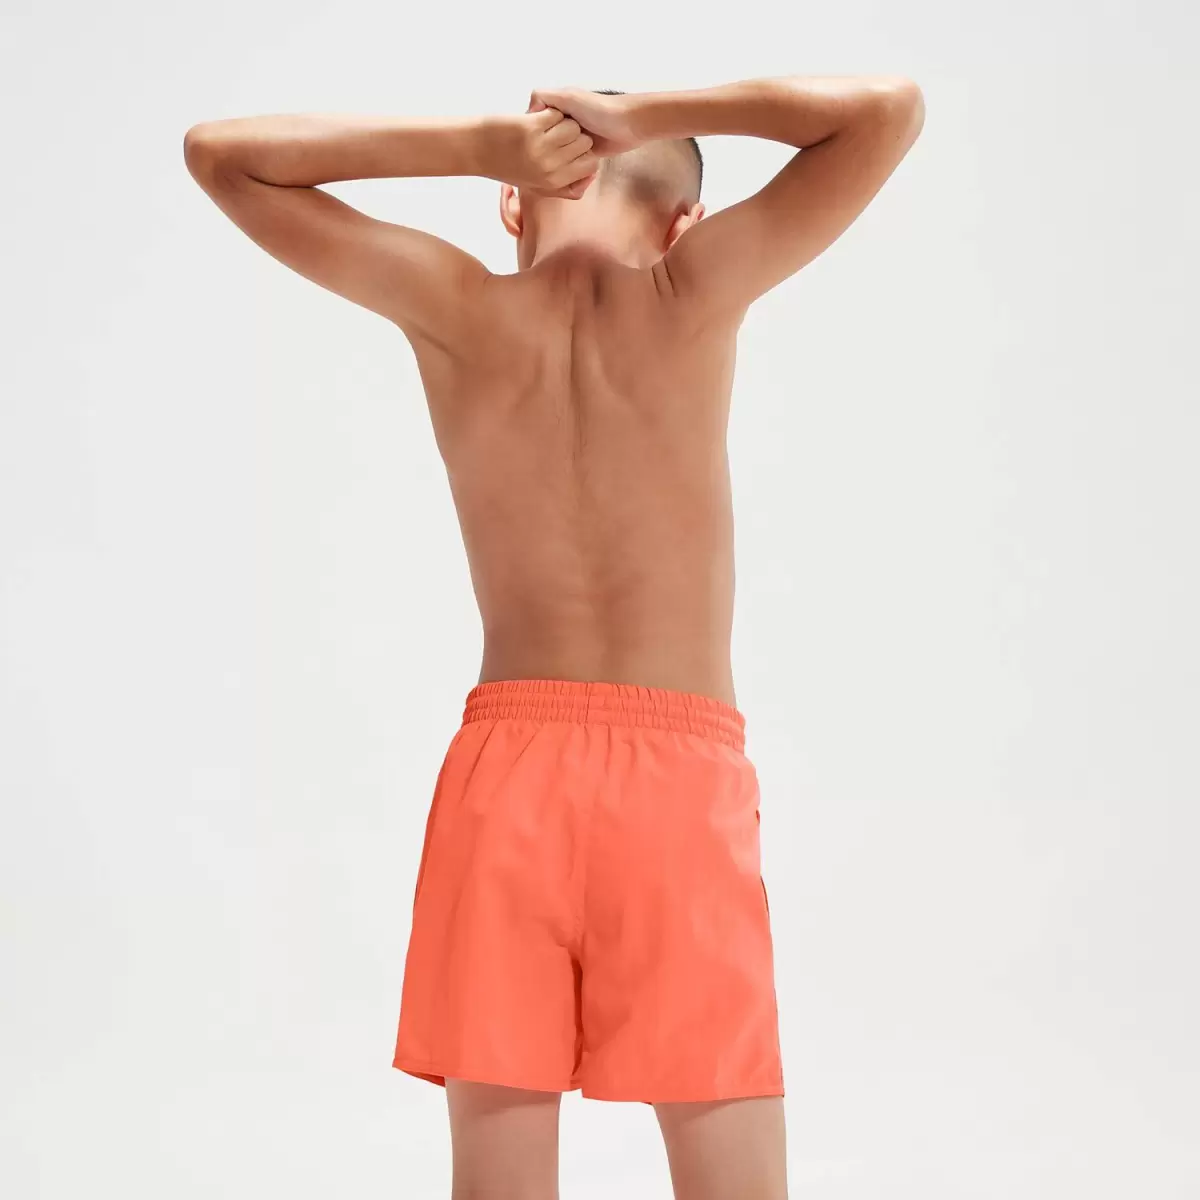 Bademode Kinder Speedo Essentials 33 Cm Schwimmshorts Für Jungen Orange - 1